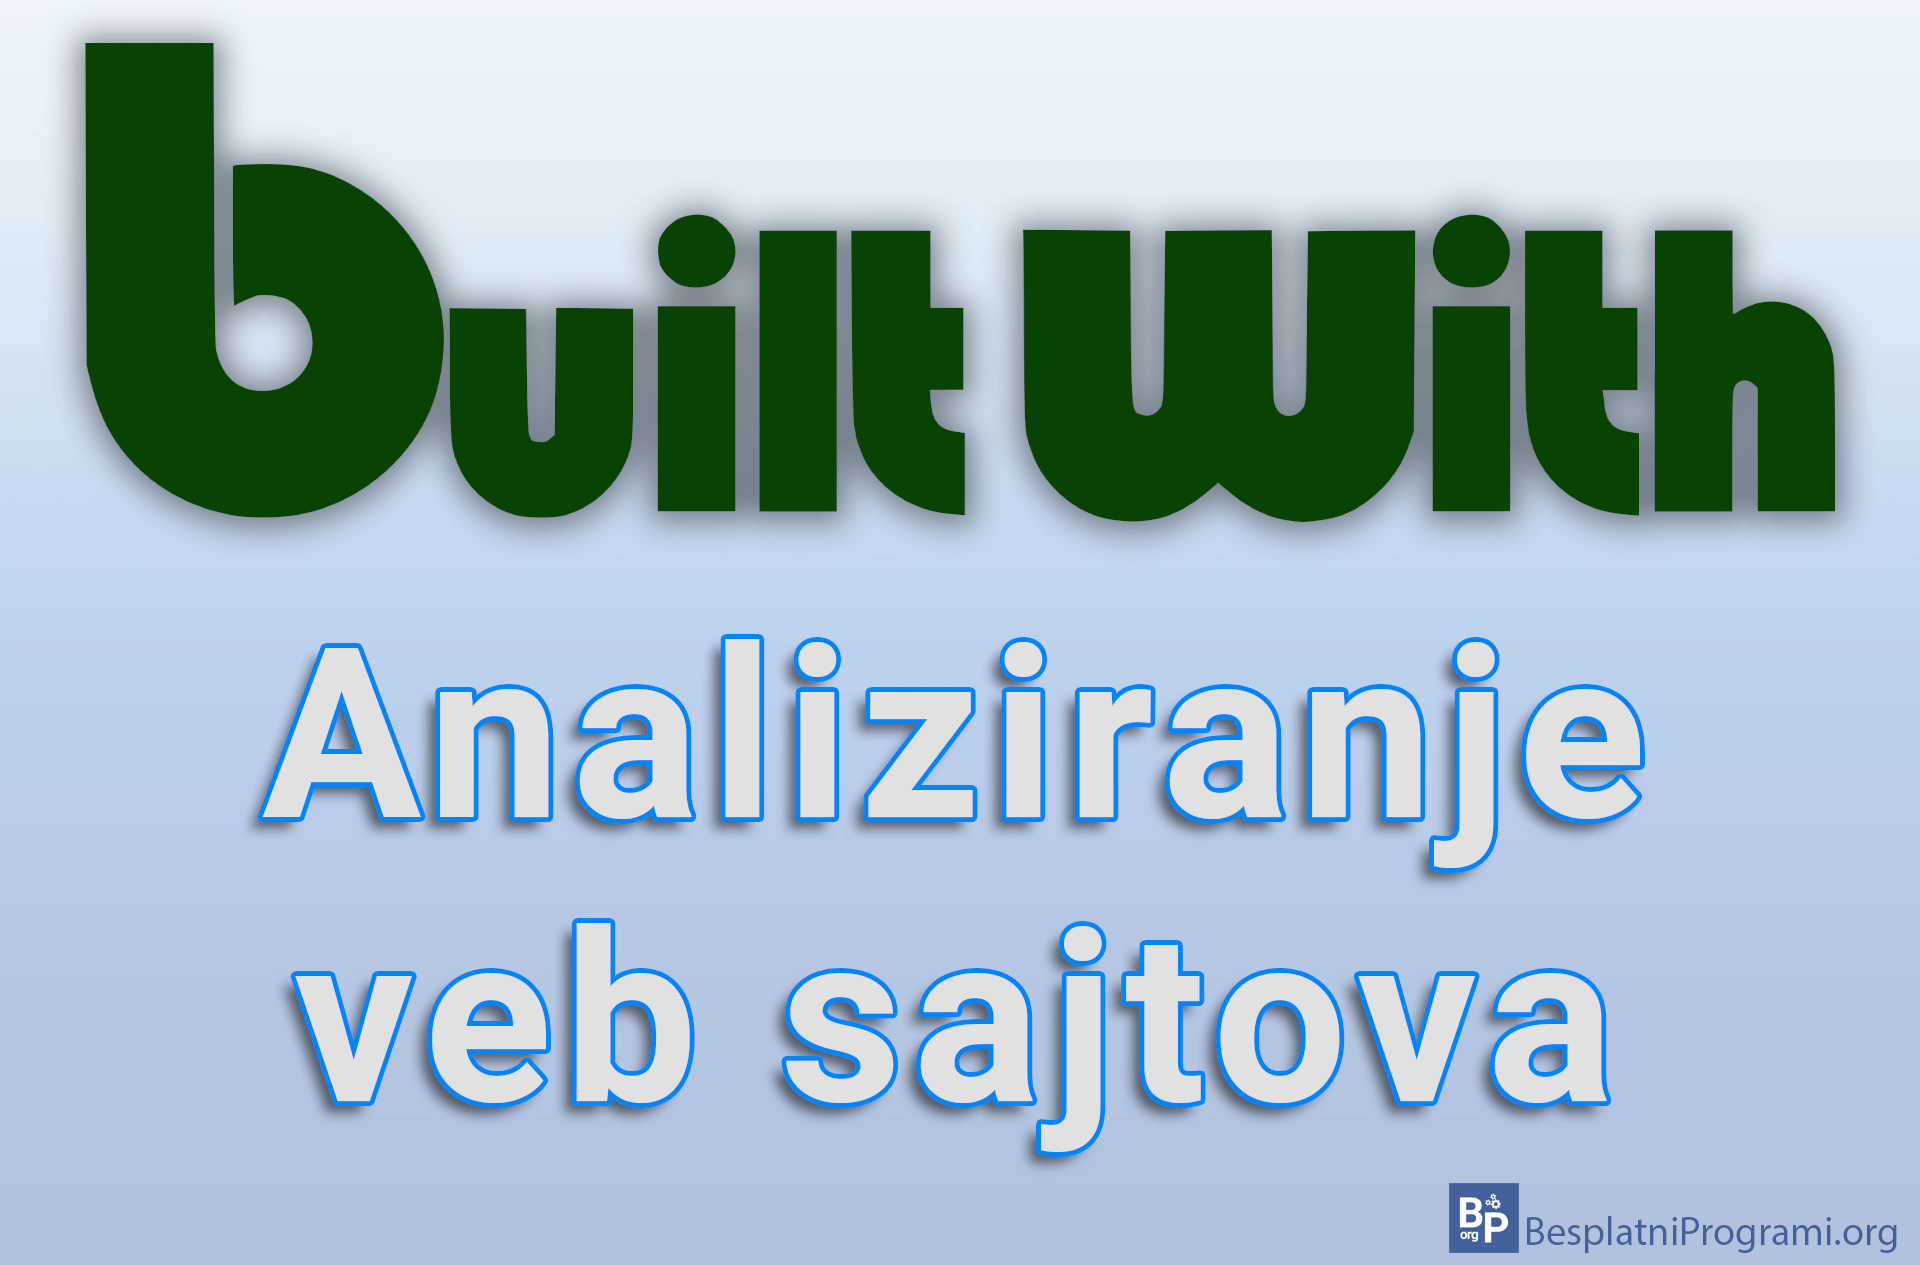 BuiltWith - Analiziranje veb sajtova